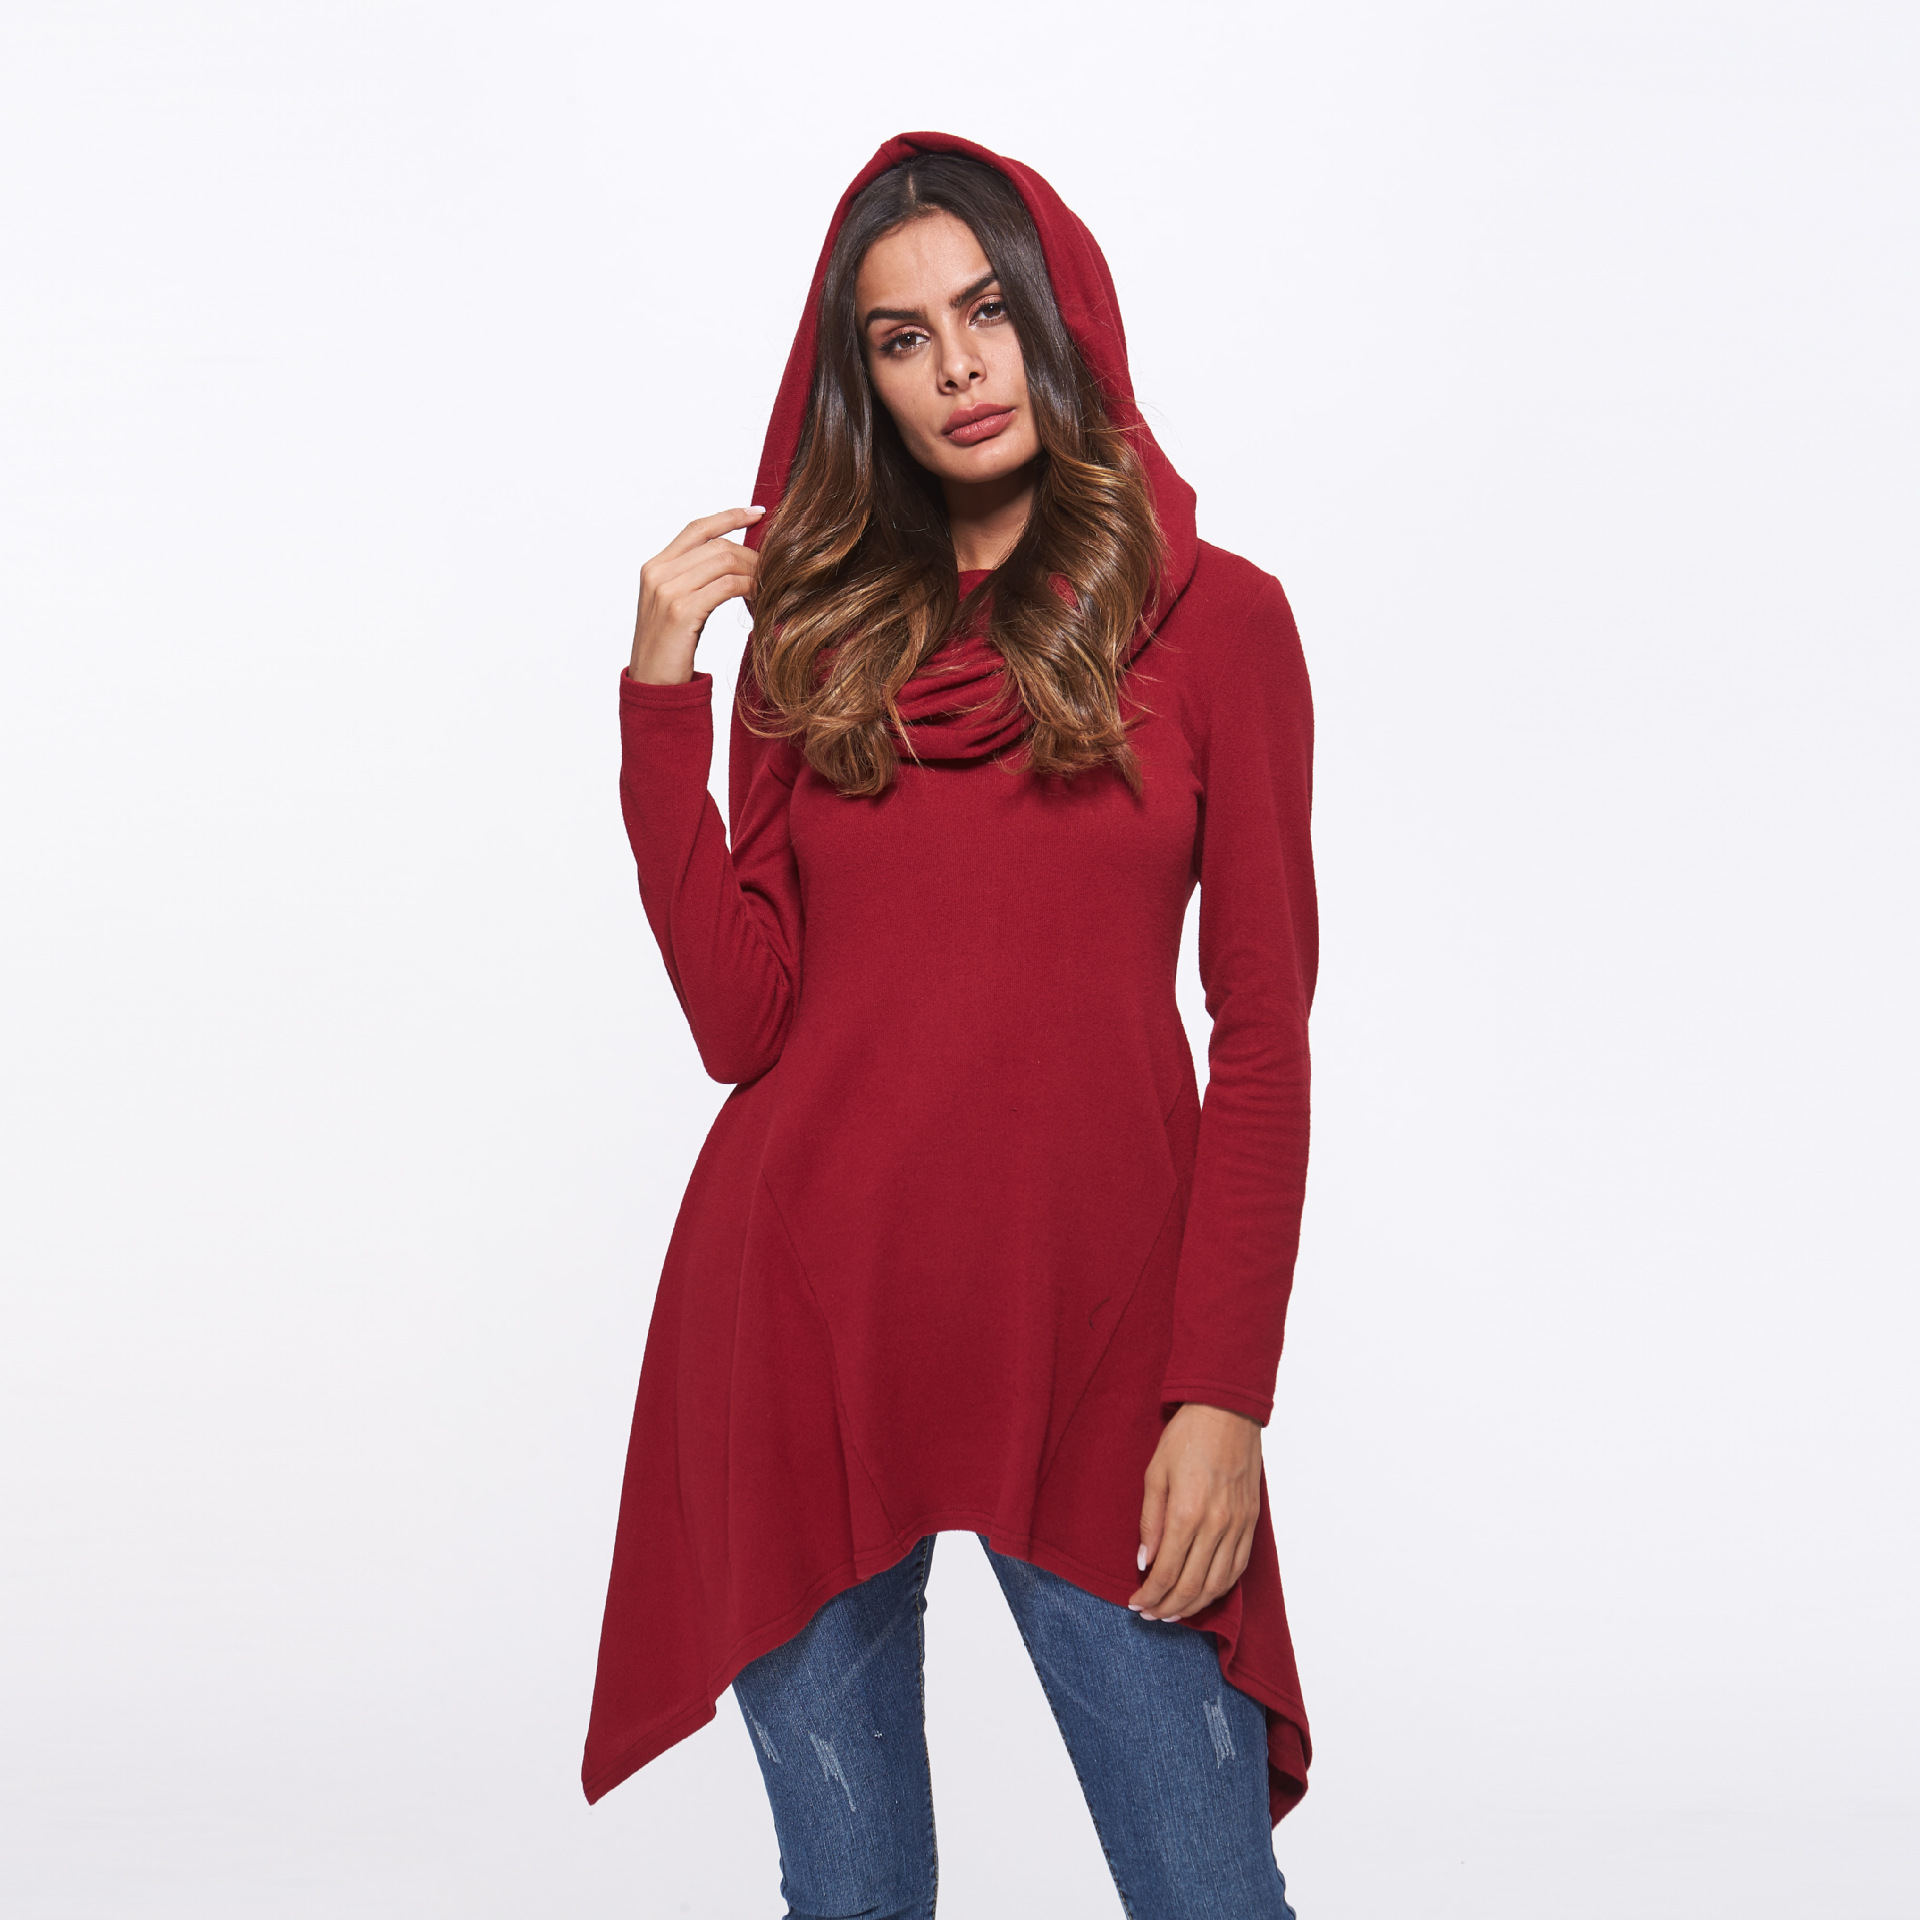 SZ60181-1 asymmetrical sweater dress for women cowl neck hooded knitwear